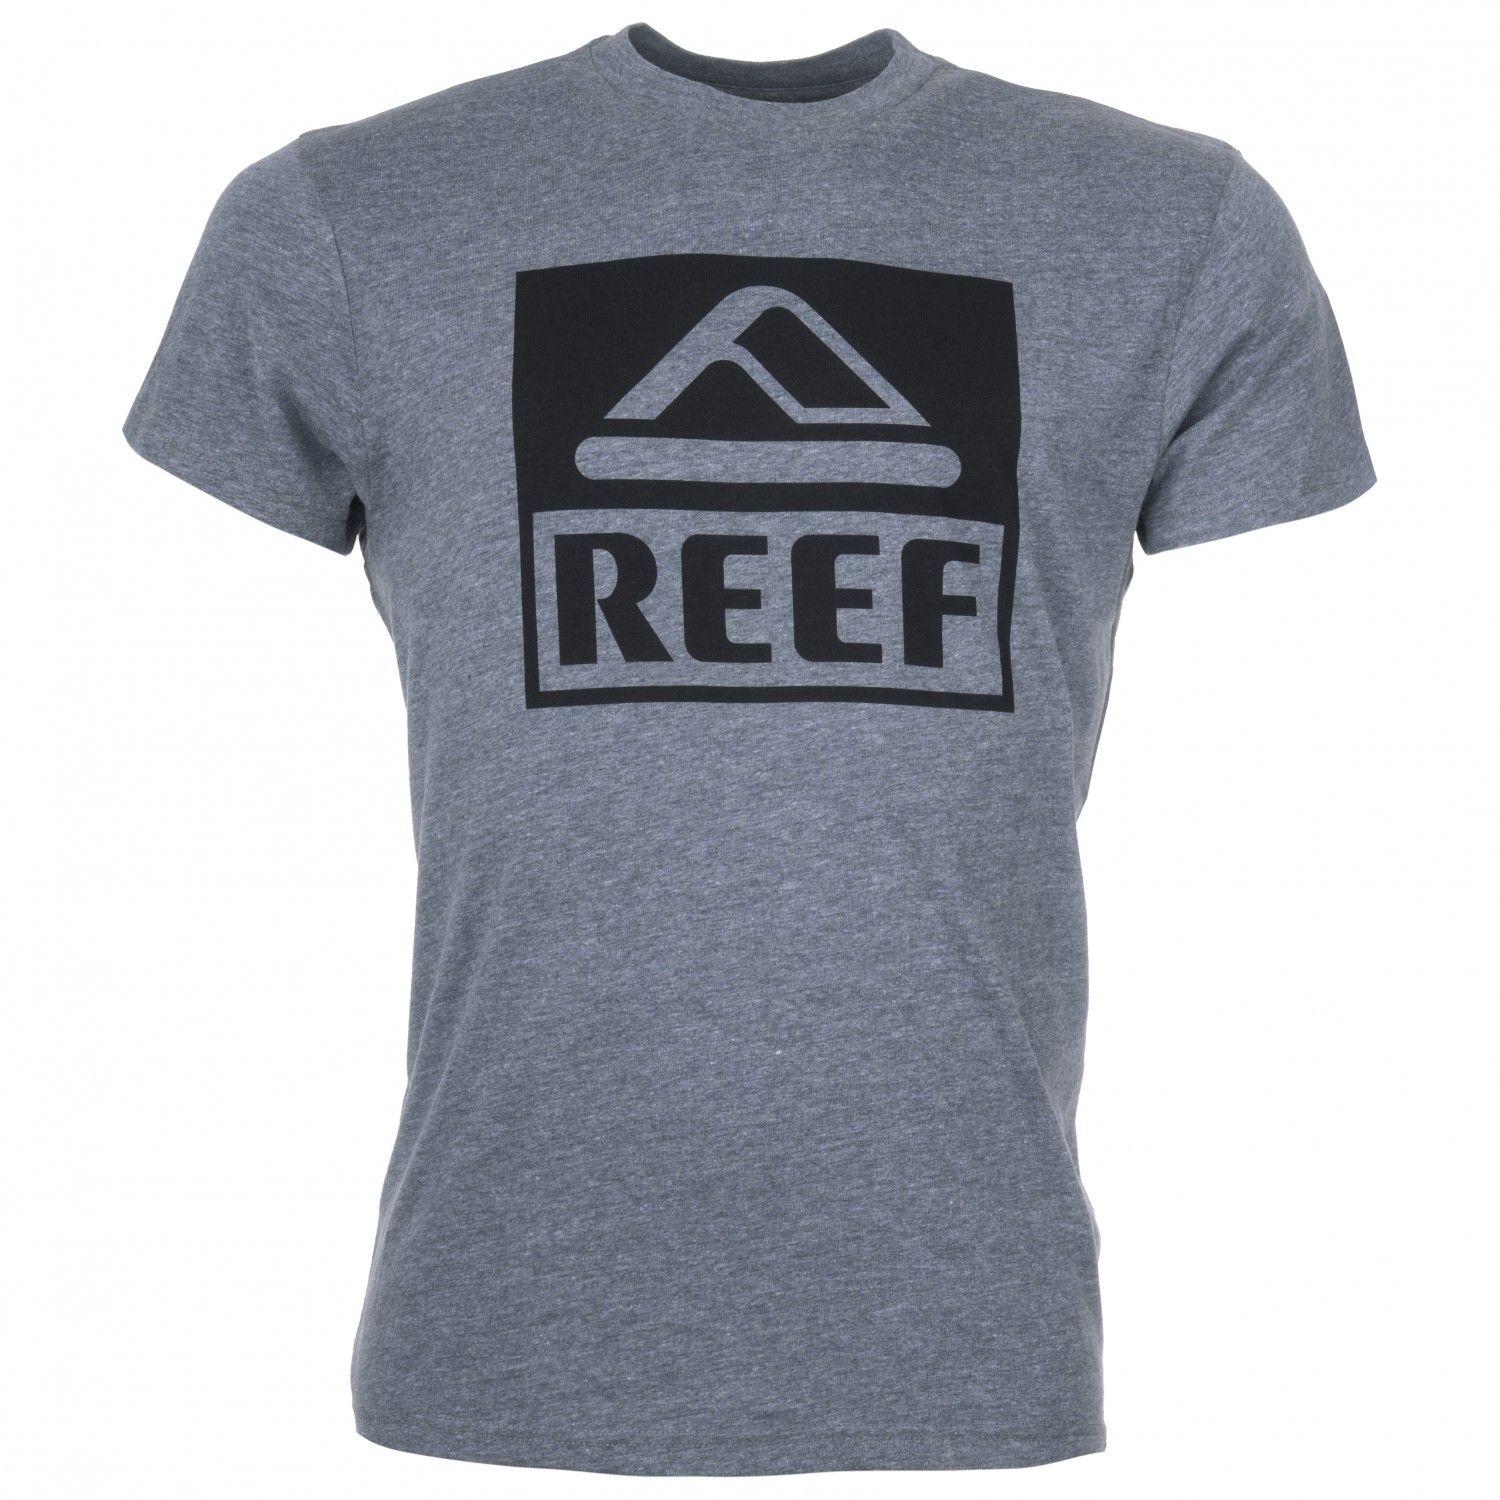 Reef Logo - Reef Logo Tee Big Shirt Men's. Buy Online. Alpinetrek.co.uk